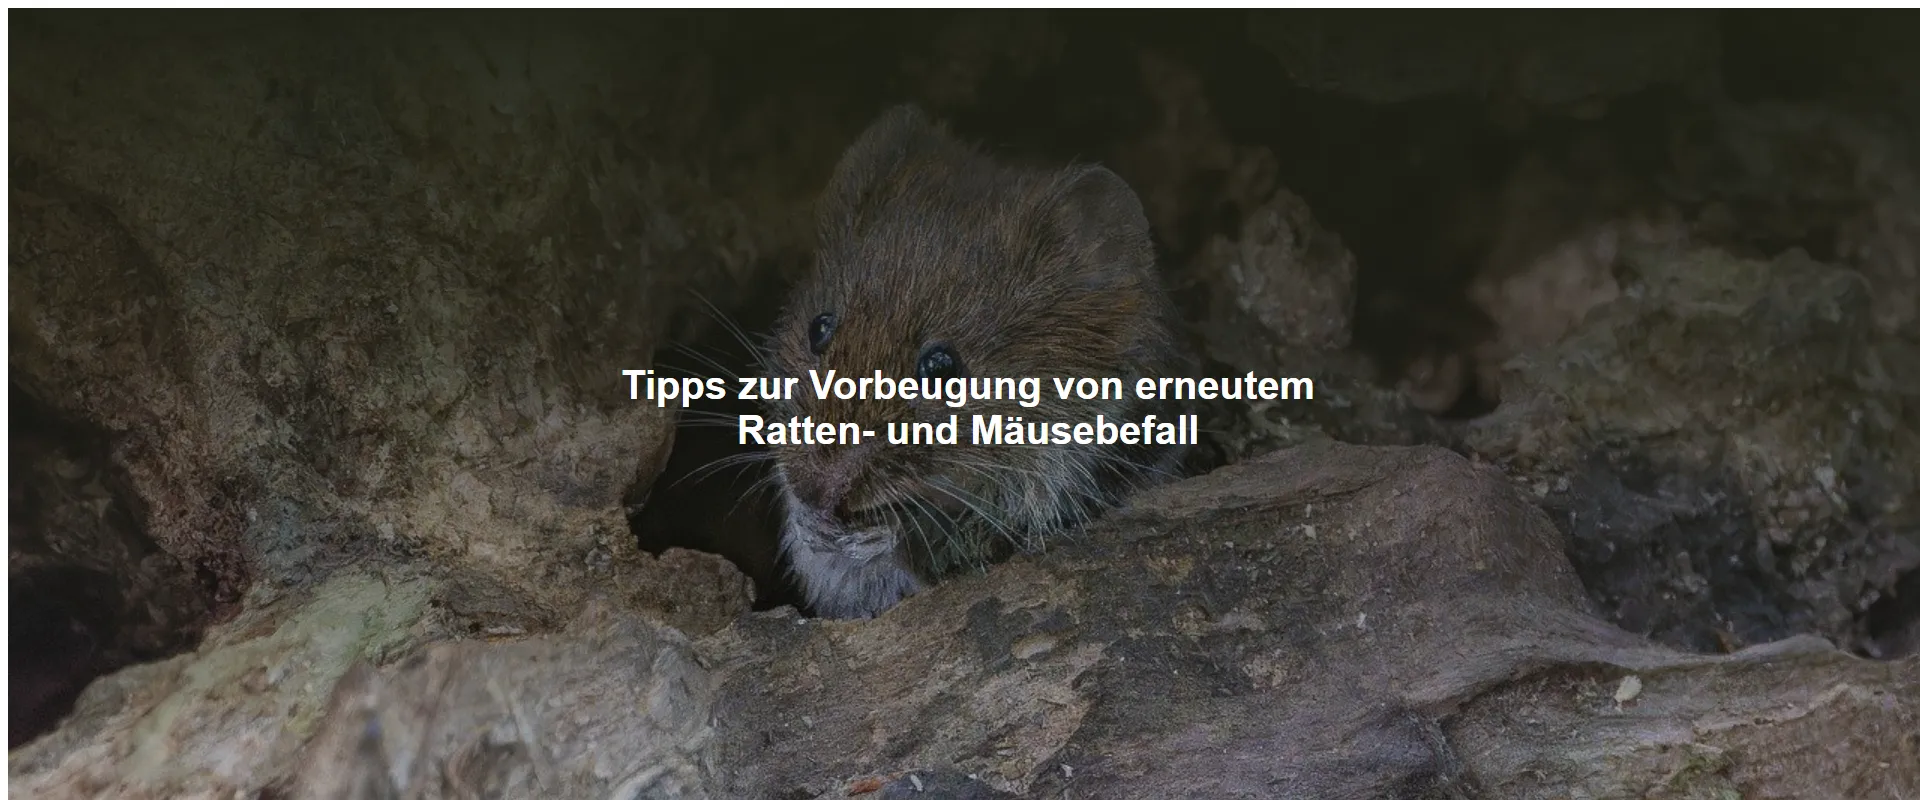 Tipps zur Vorbeugung von erneutem Ratten- und Mäusebefall